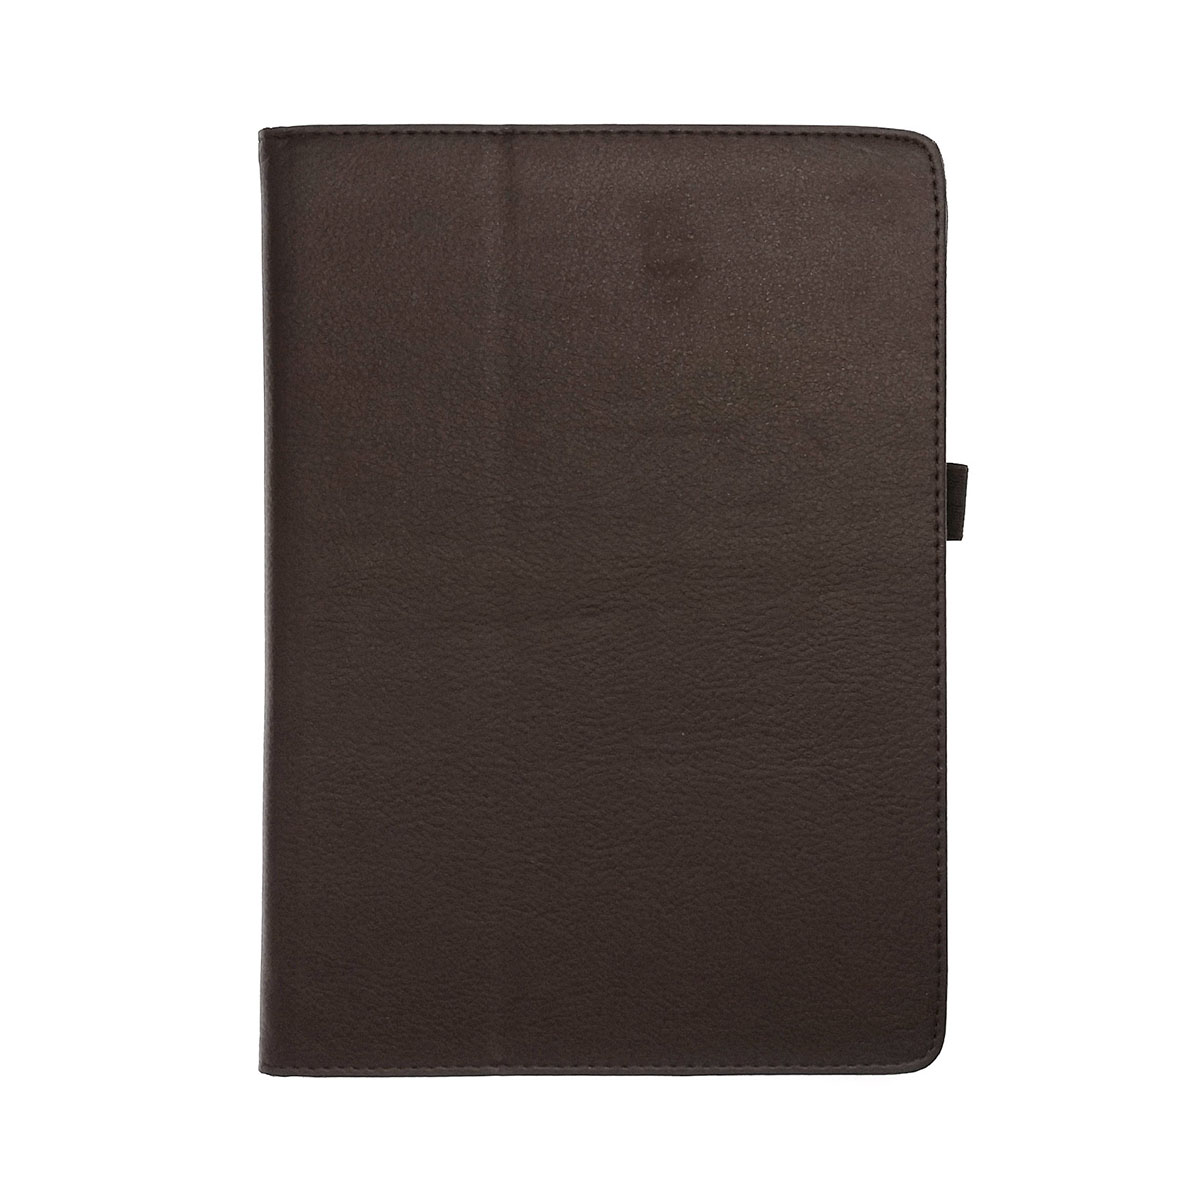 Чехол книжка для APPLE iPad Air, Air 2, экокожа, цвет коричневый.